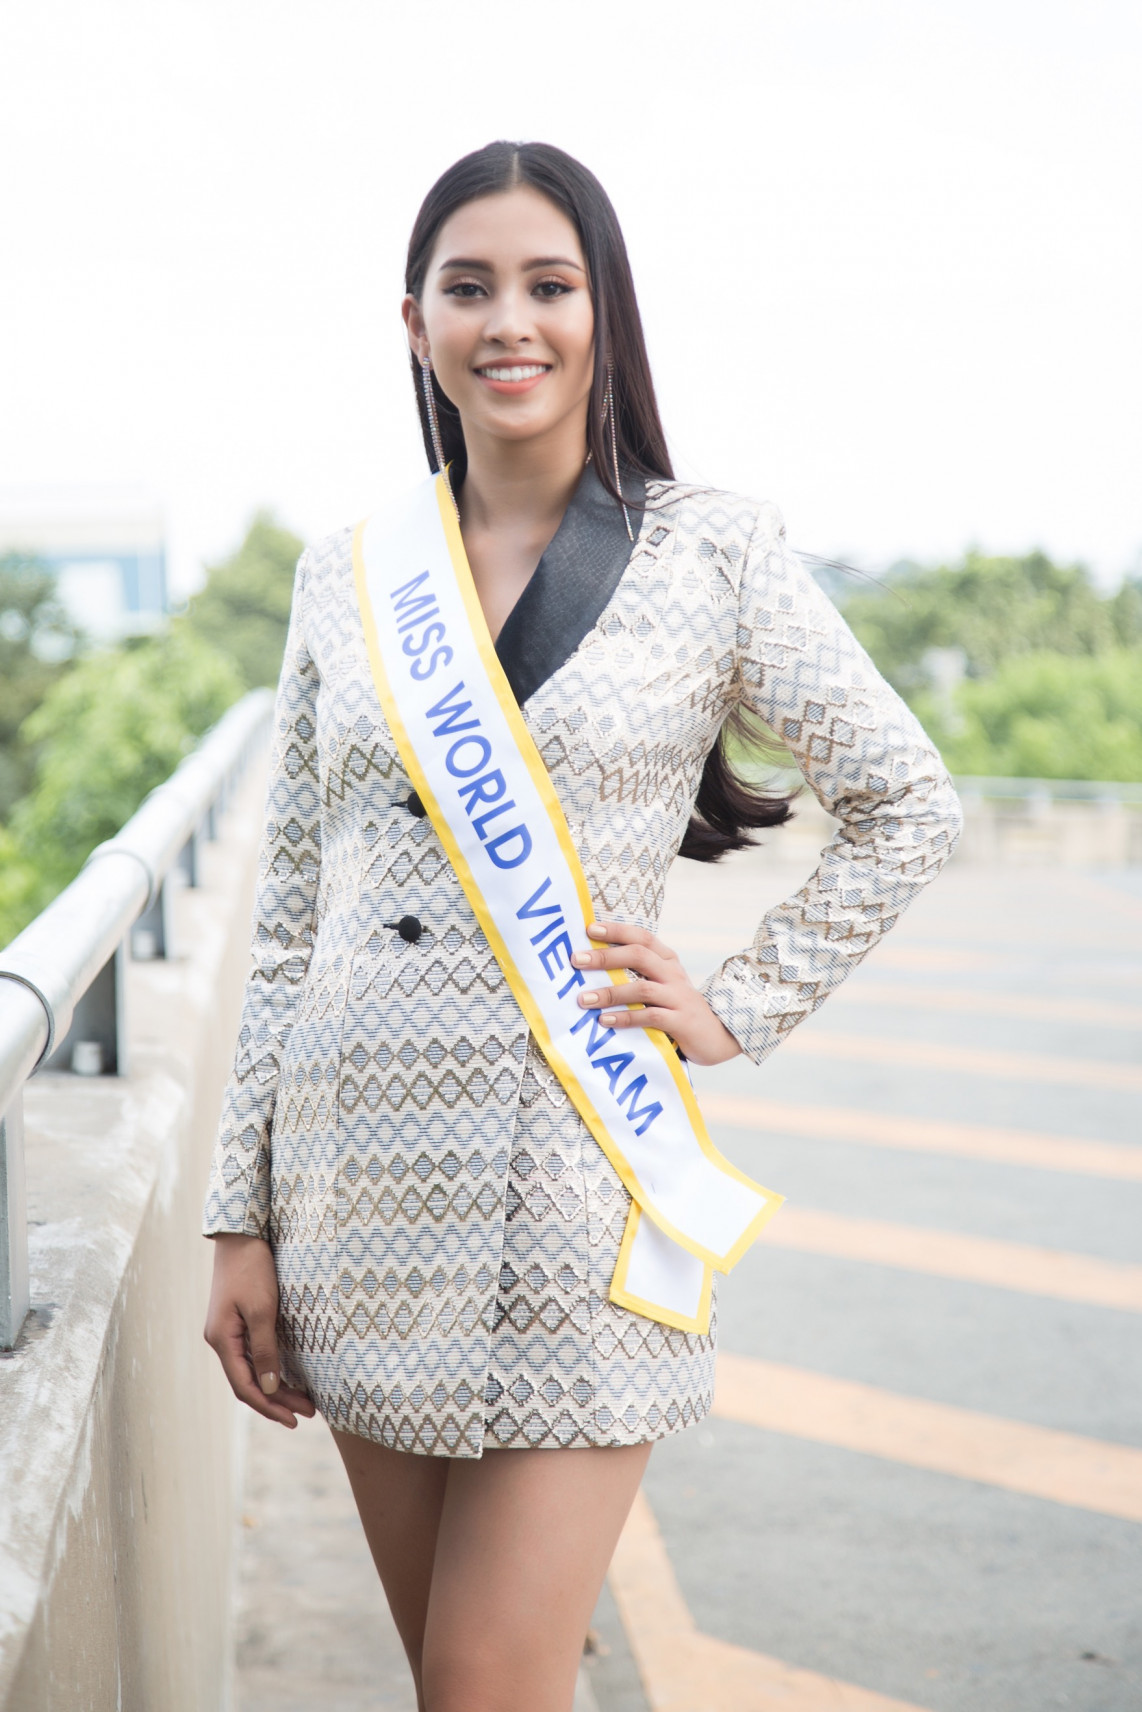 Đêm Chung kết Miss World 2018 sẽ diễn ra vào ngày 8/12 tại thành phố Tam Á, Trung Quốc.